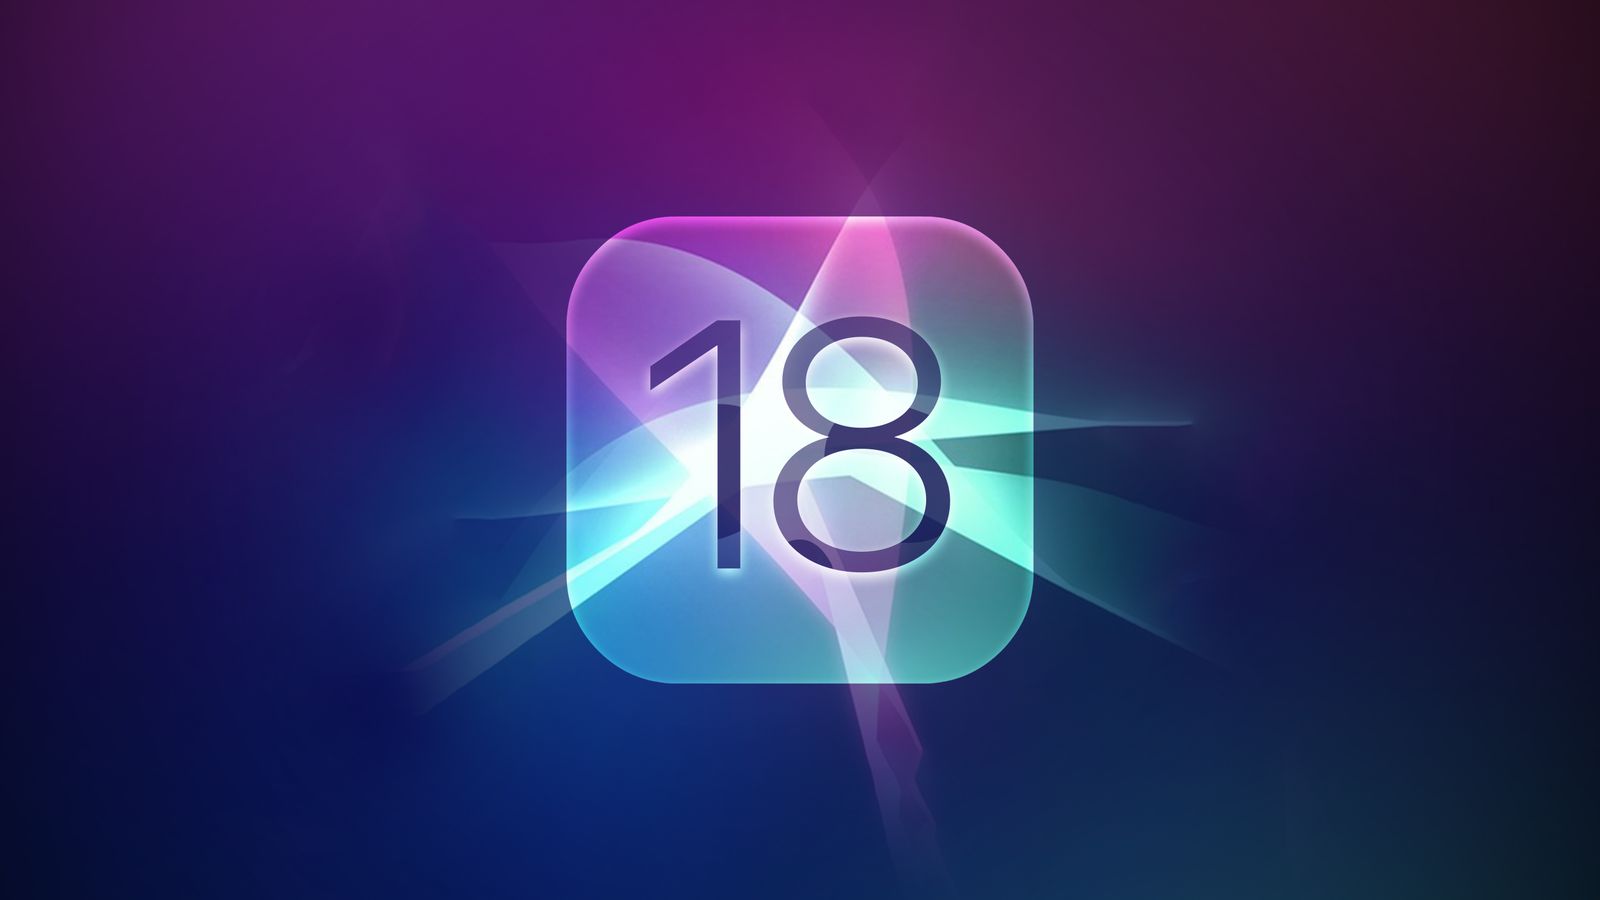 iPhoneIslam.com'dan, 18-12 Nisan 18 haftasında mor, mavi ve pembe tonlarını ışık parlamalarıyla karıştıran, 2023 sayısını gösteren parlak bir uygulama simgesinin yer aldığı soyut bir duvar kağıdı.